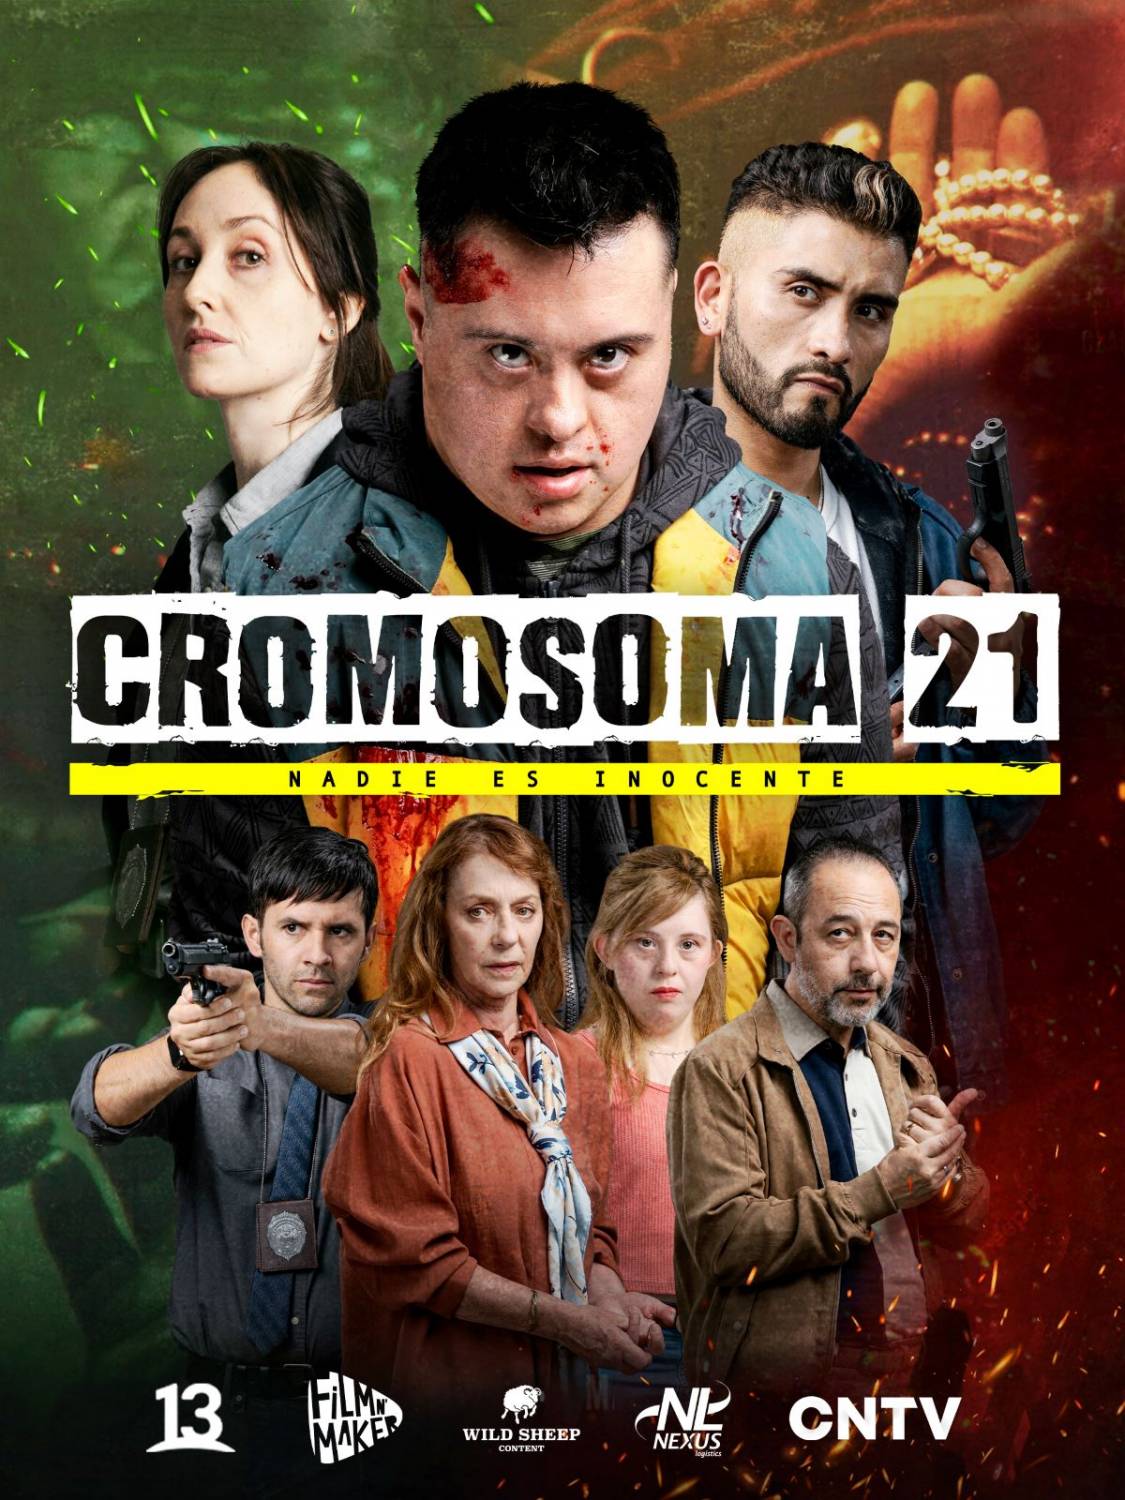 Conoce más sobre el personaje de Claudia di Girólamo en “Cromosoma 21”